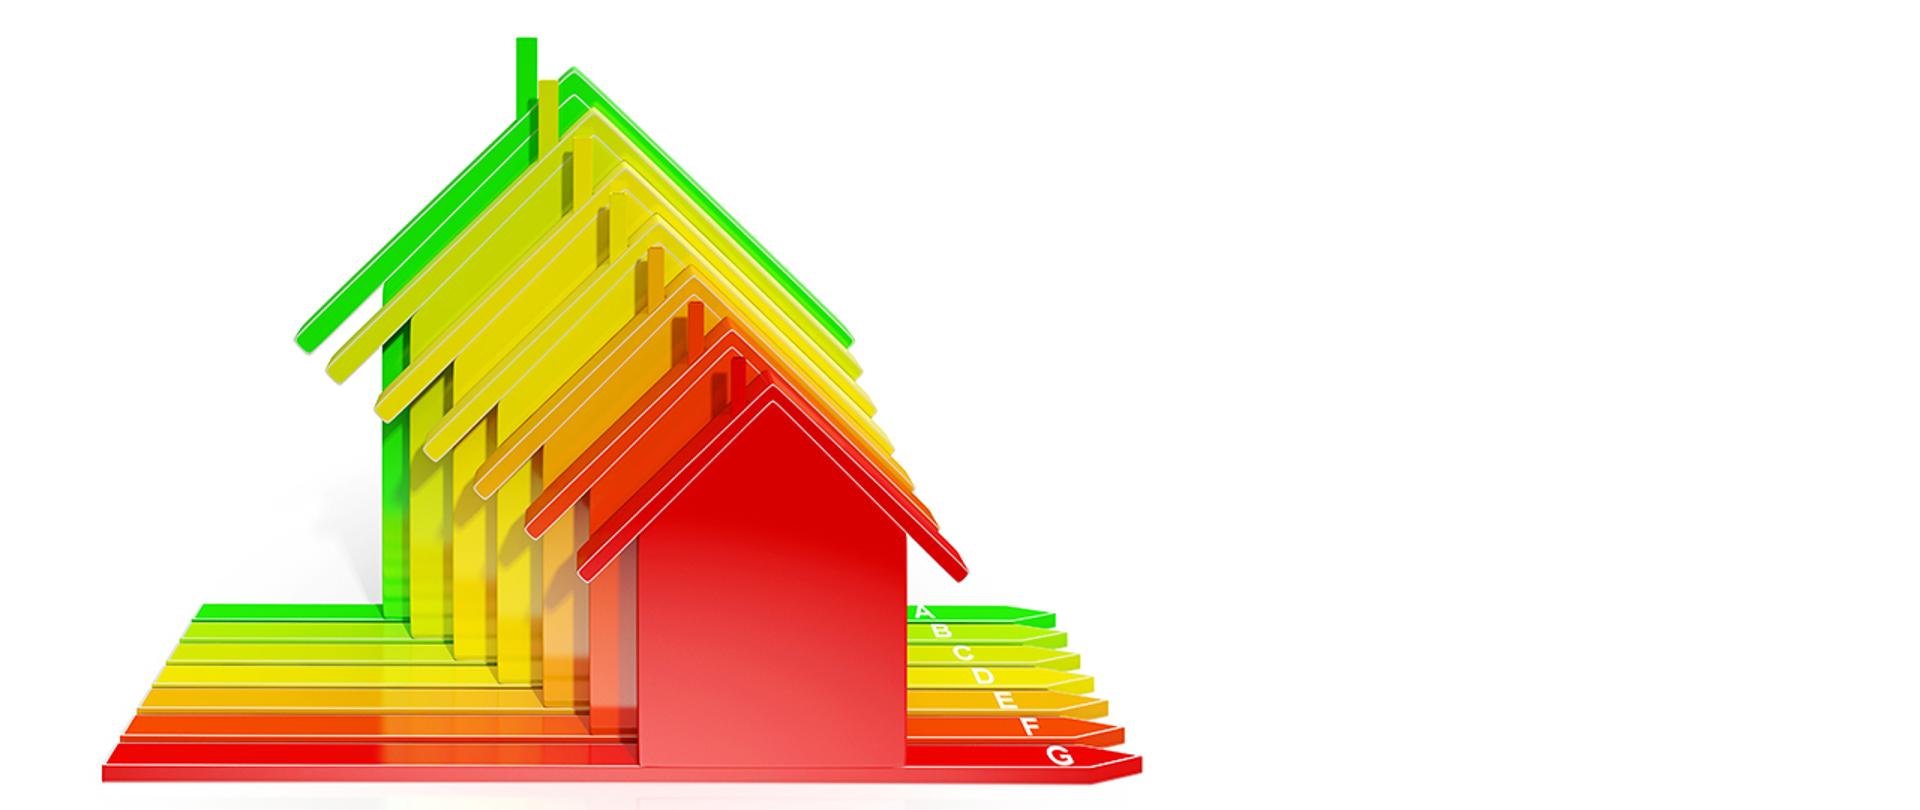 Grafika przedstawiająca domki na białym tle ilustrujące efektywność energetyczną (od A do G).